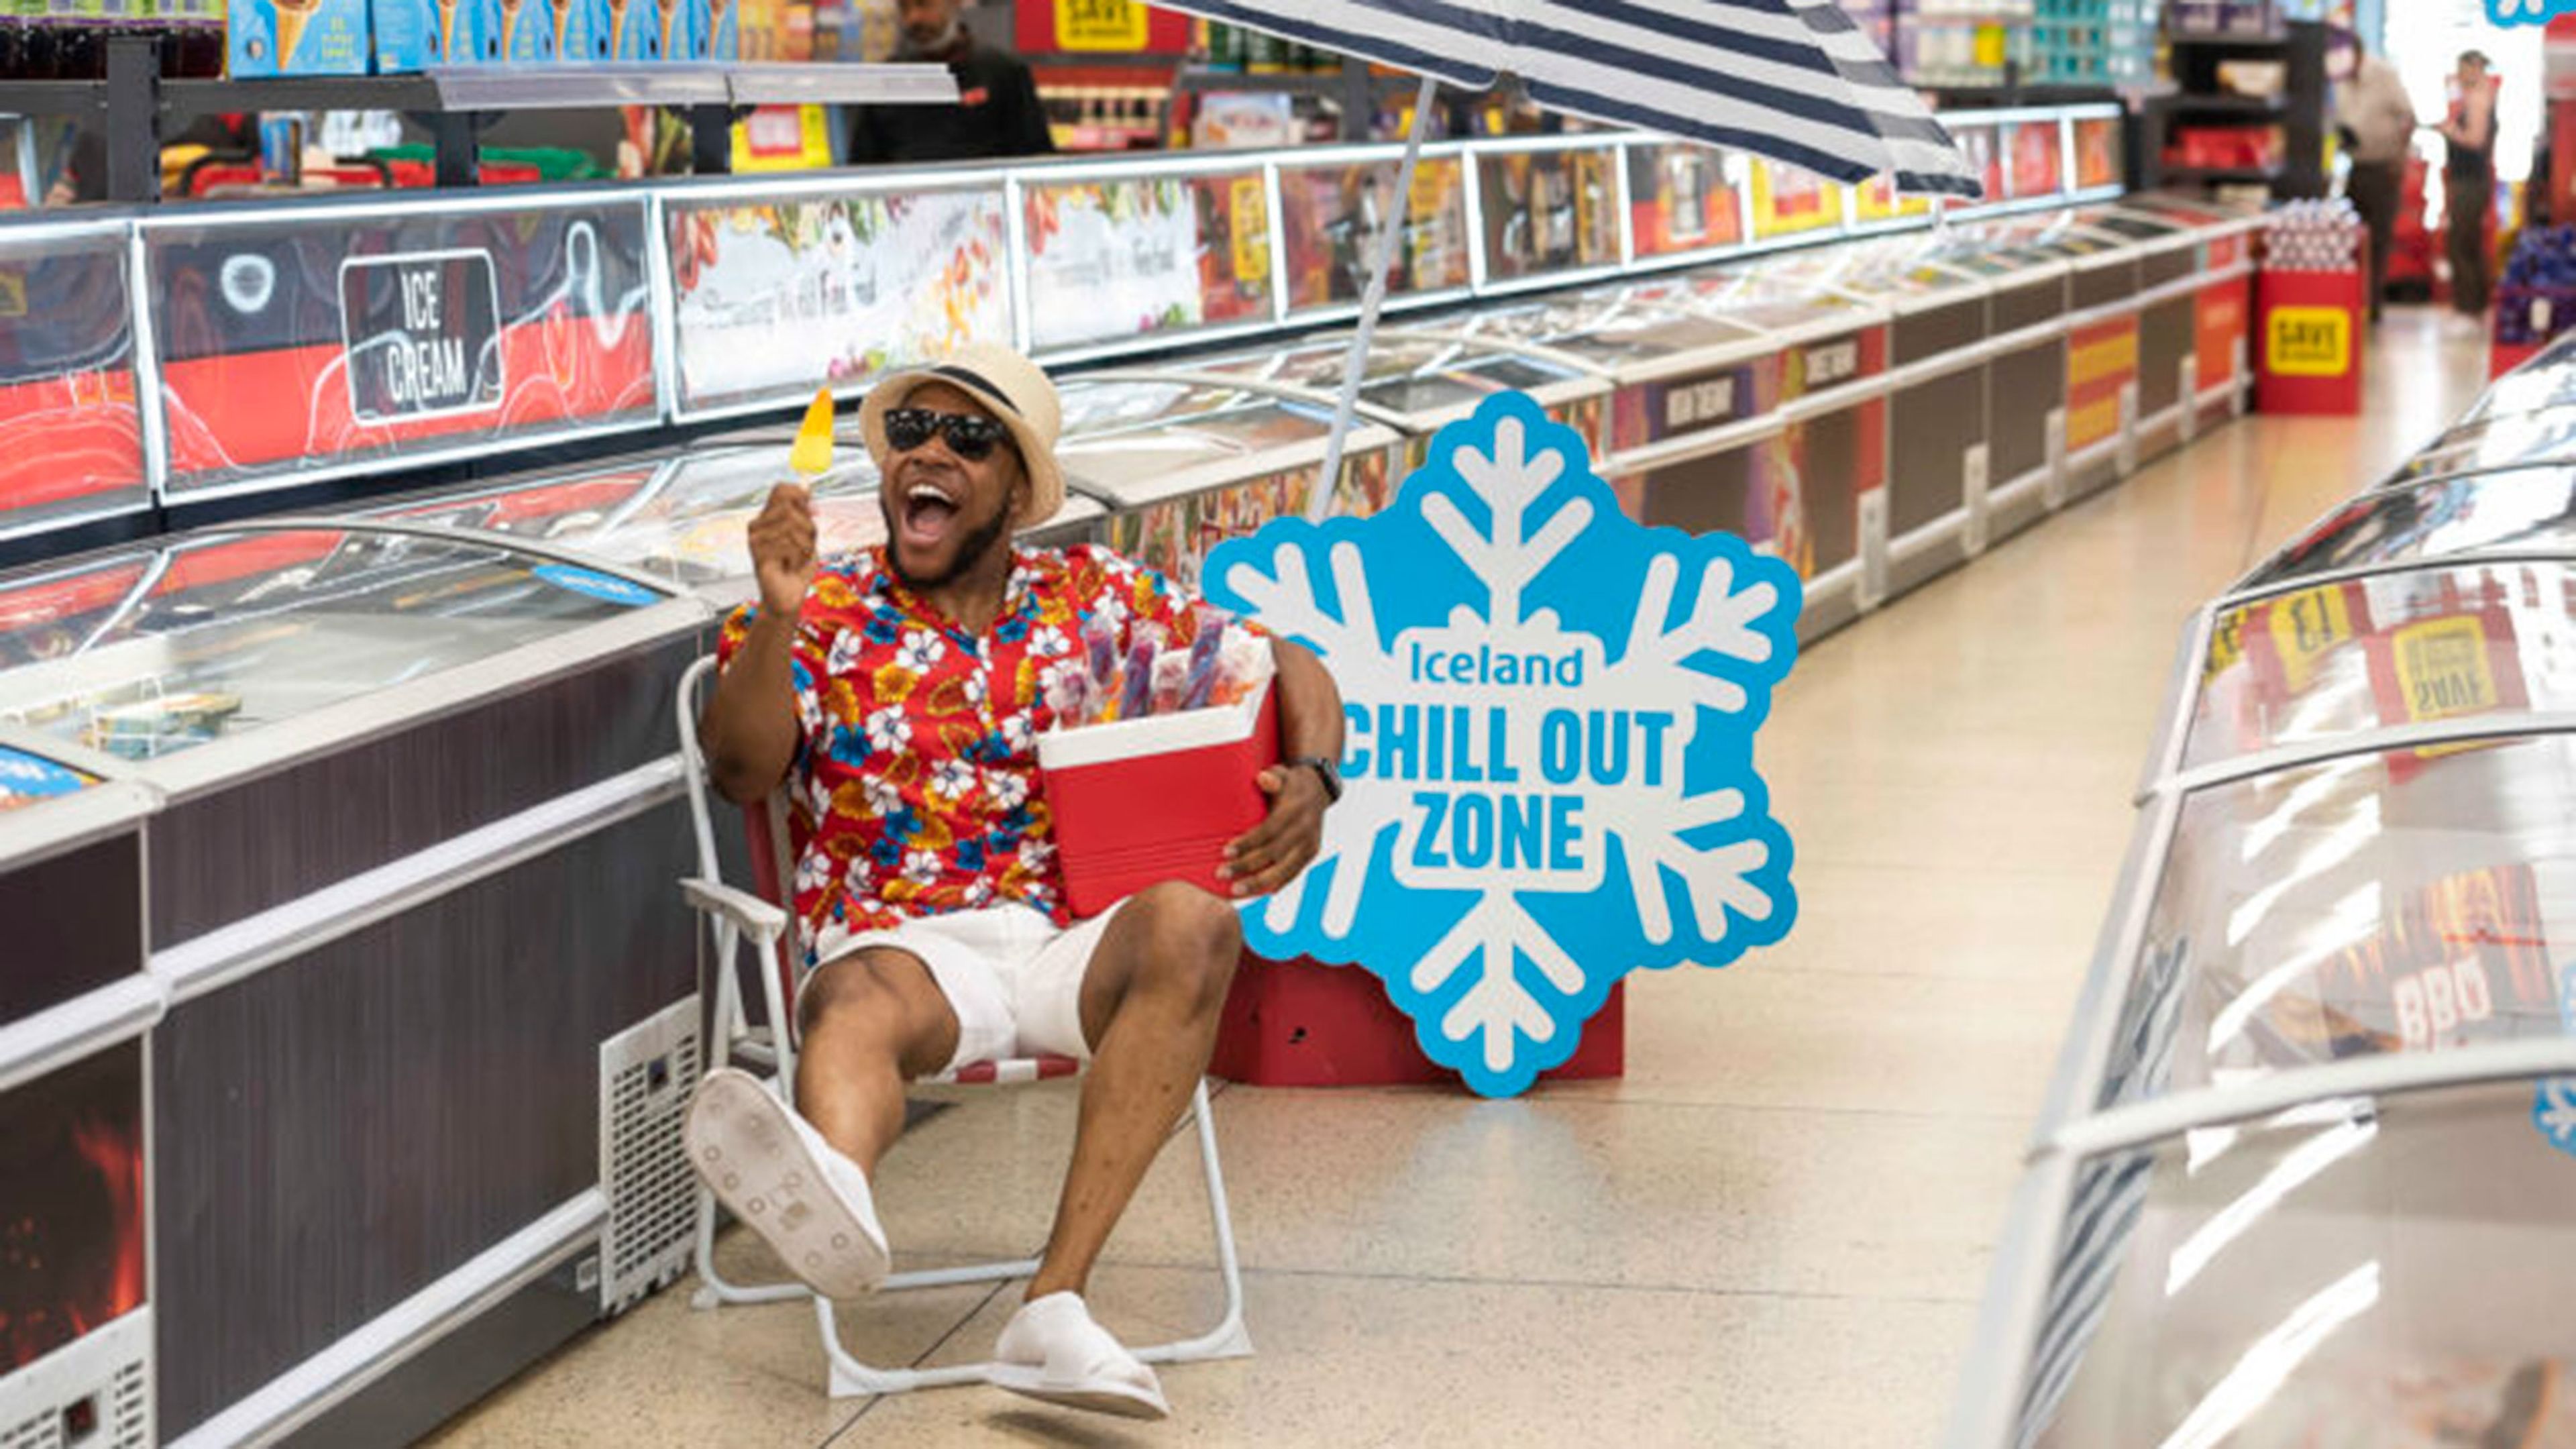 Este supermercado te permite descansar en el pasillo de congelados con tumbonas y polos de hielo gratis para evitar la ola de calor